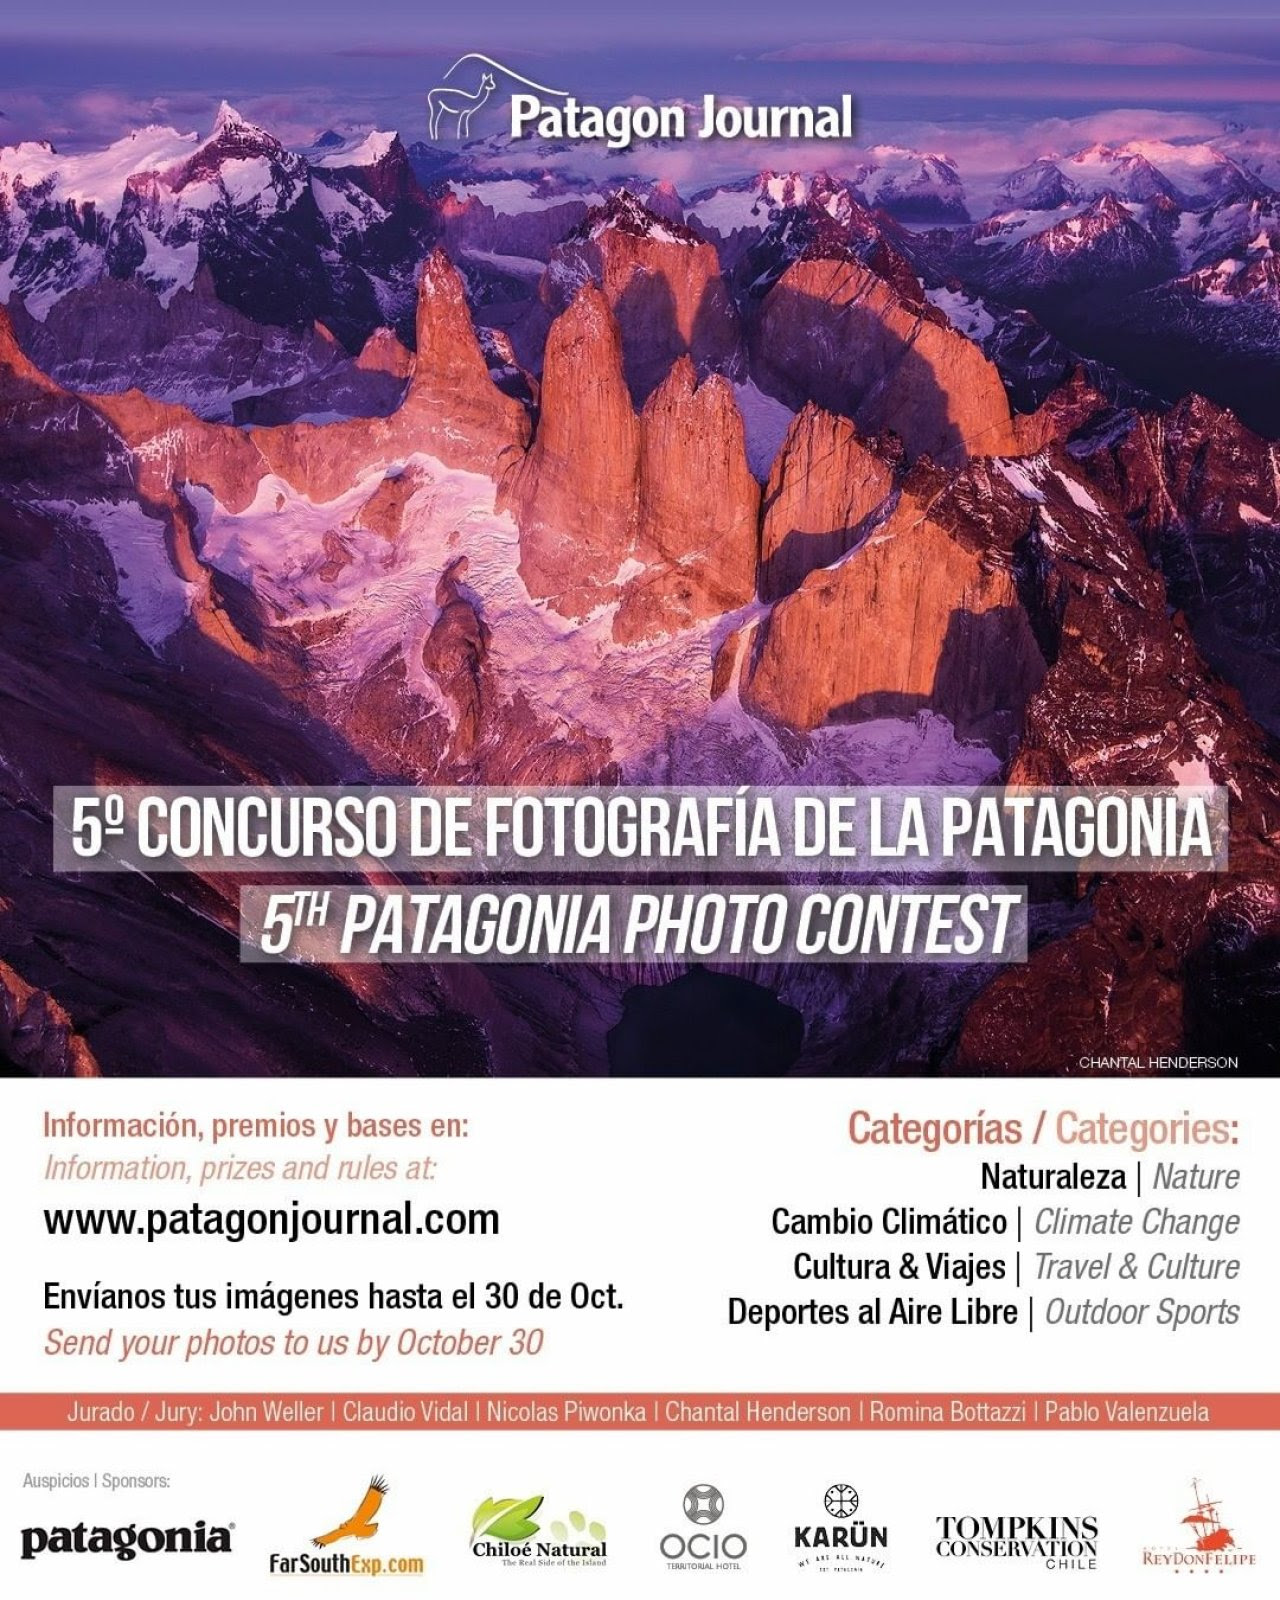 Patagon Journal anuncia el lanzamiento de su 5º Concurso de Fotografía de la Patagonia